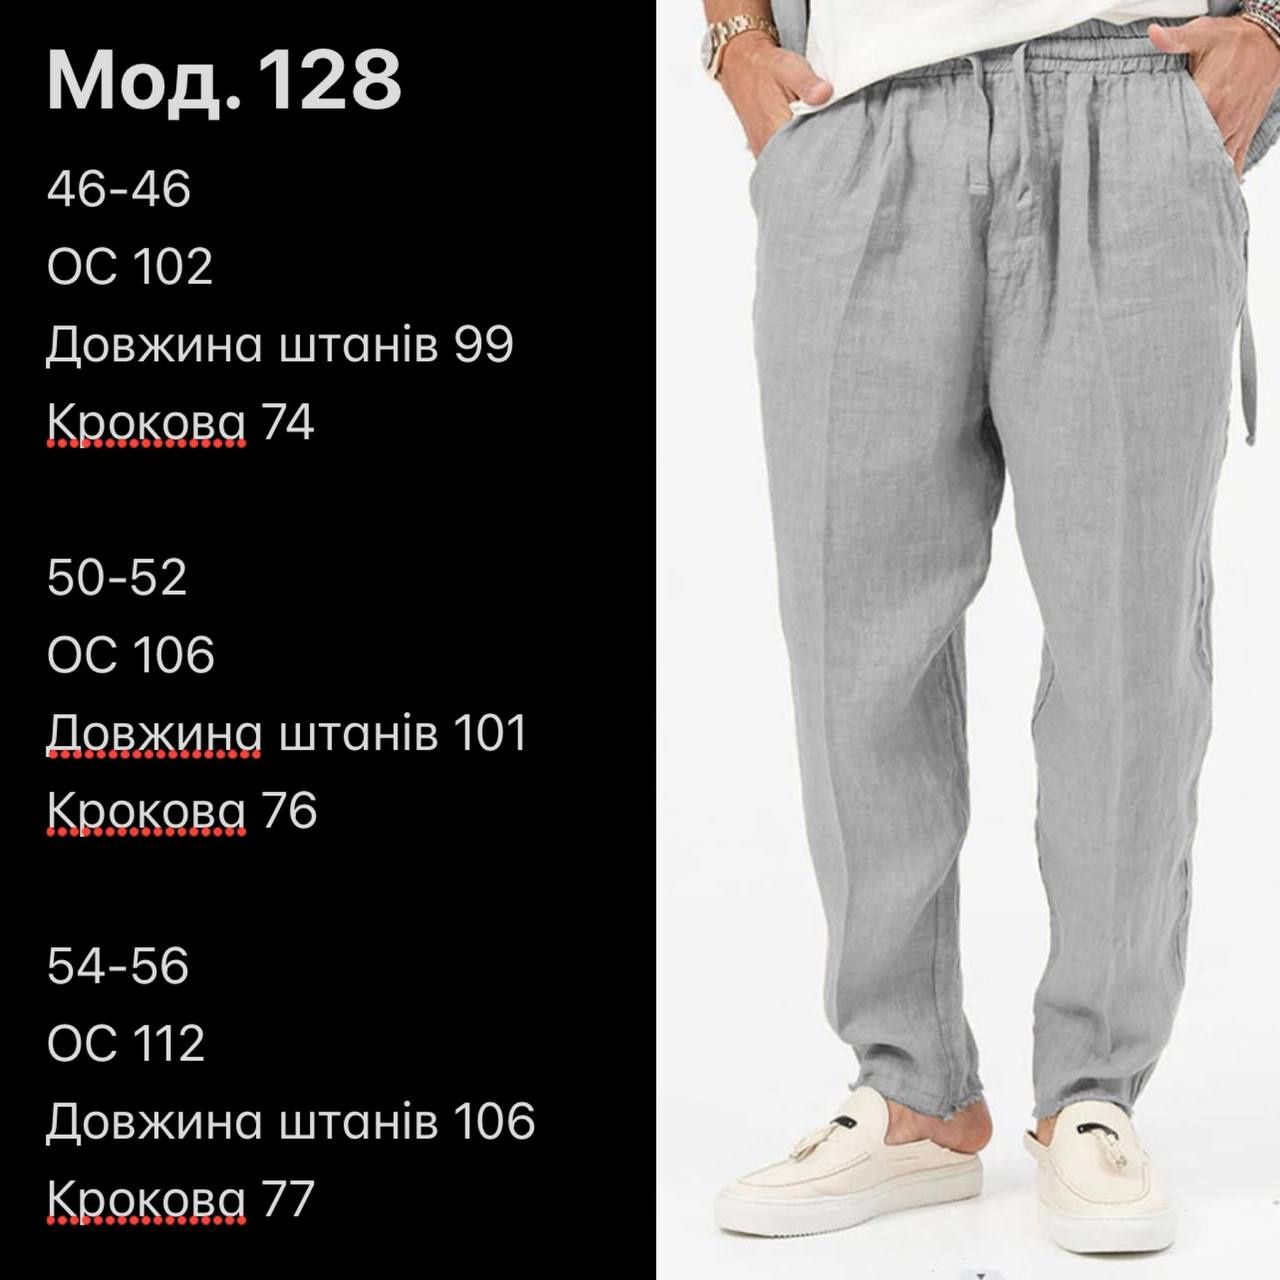 Чоловічі льняні штани. Р. 46-48, 50-52, 54-56